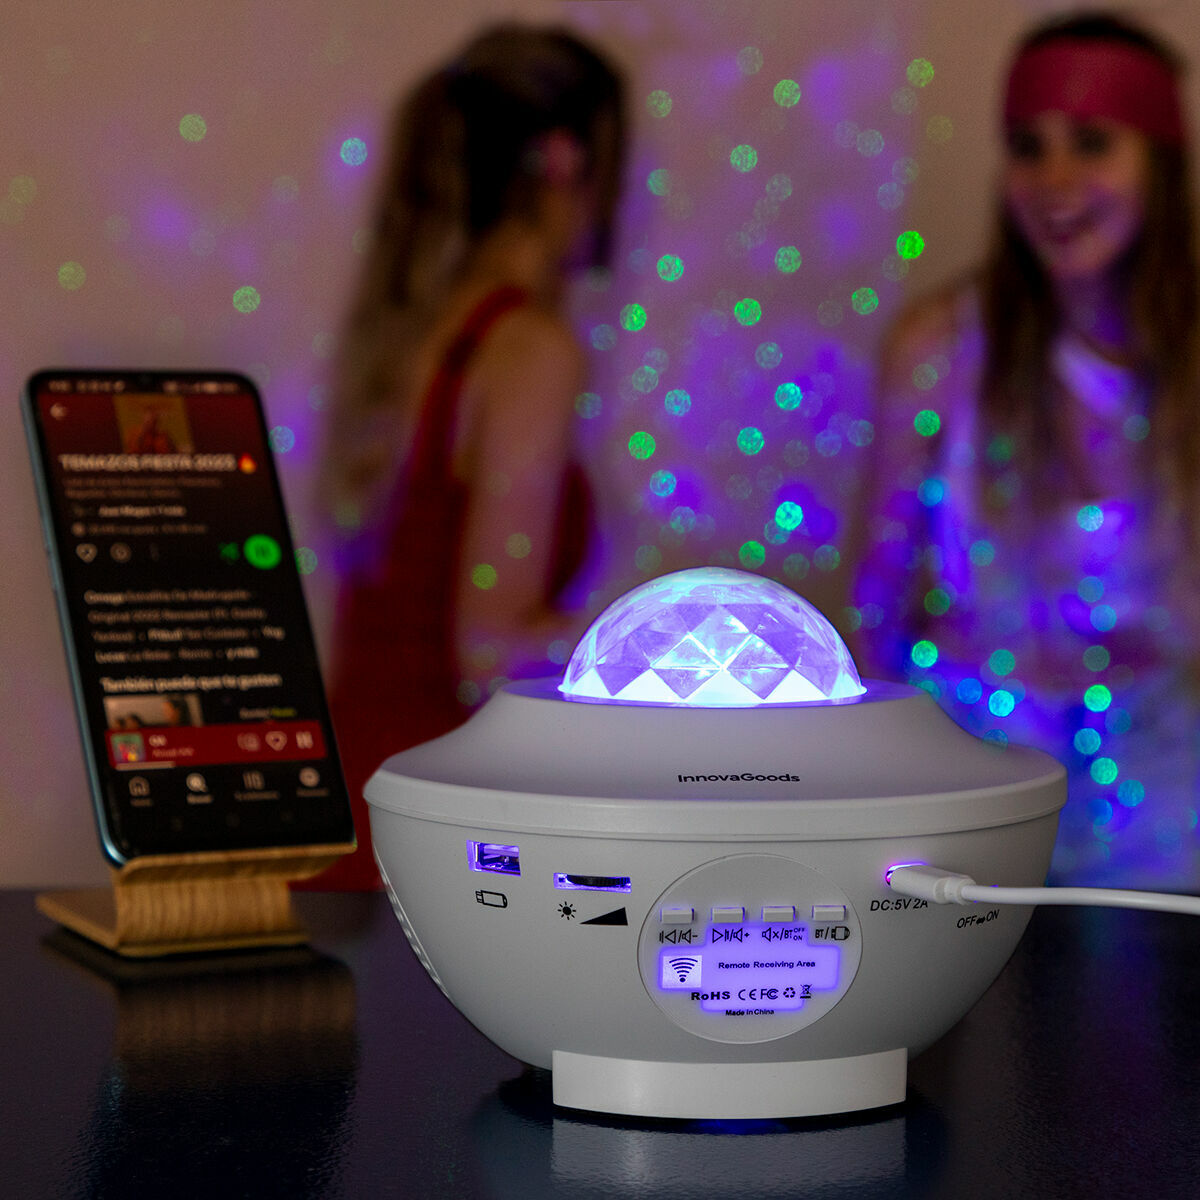 Kaufe LED- und Laser-Sternenprojektor mit Lautsprecher Sedlay InnovaGoods bei AWK Flagship um € 40.00